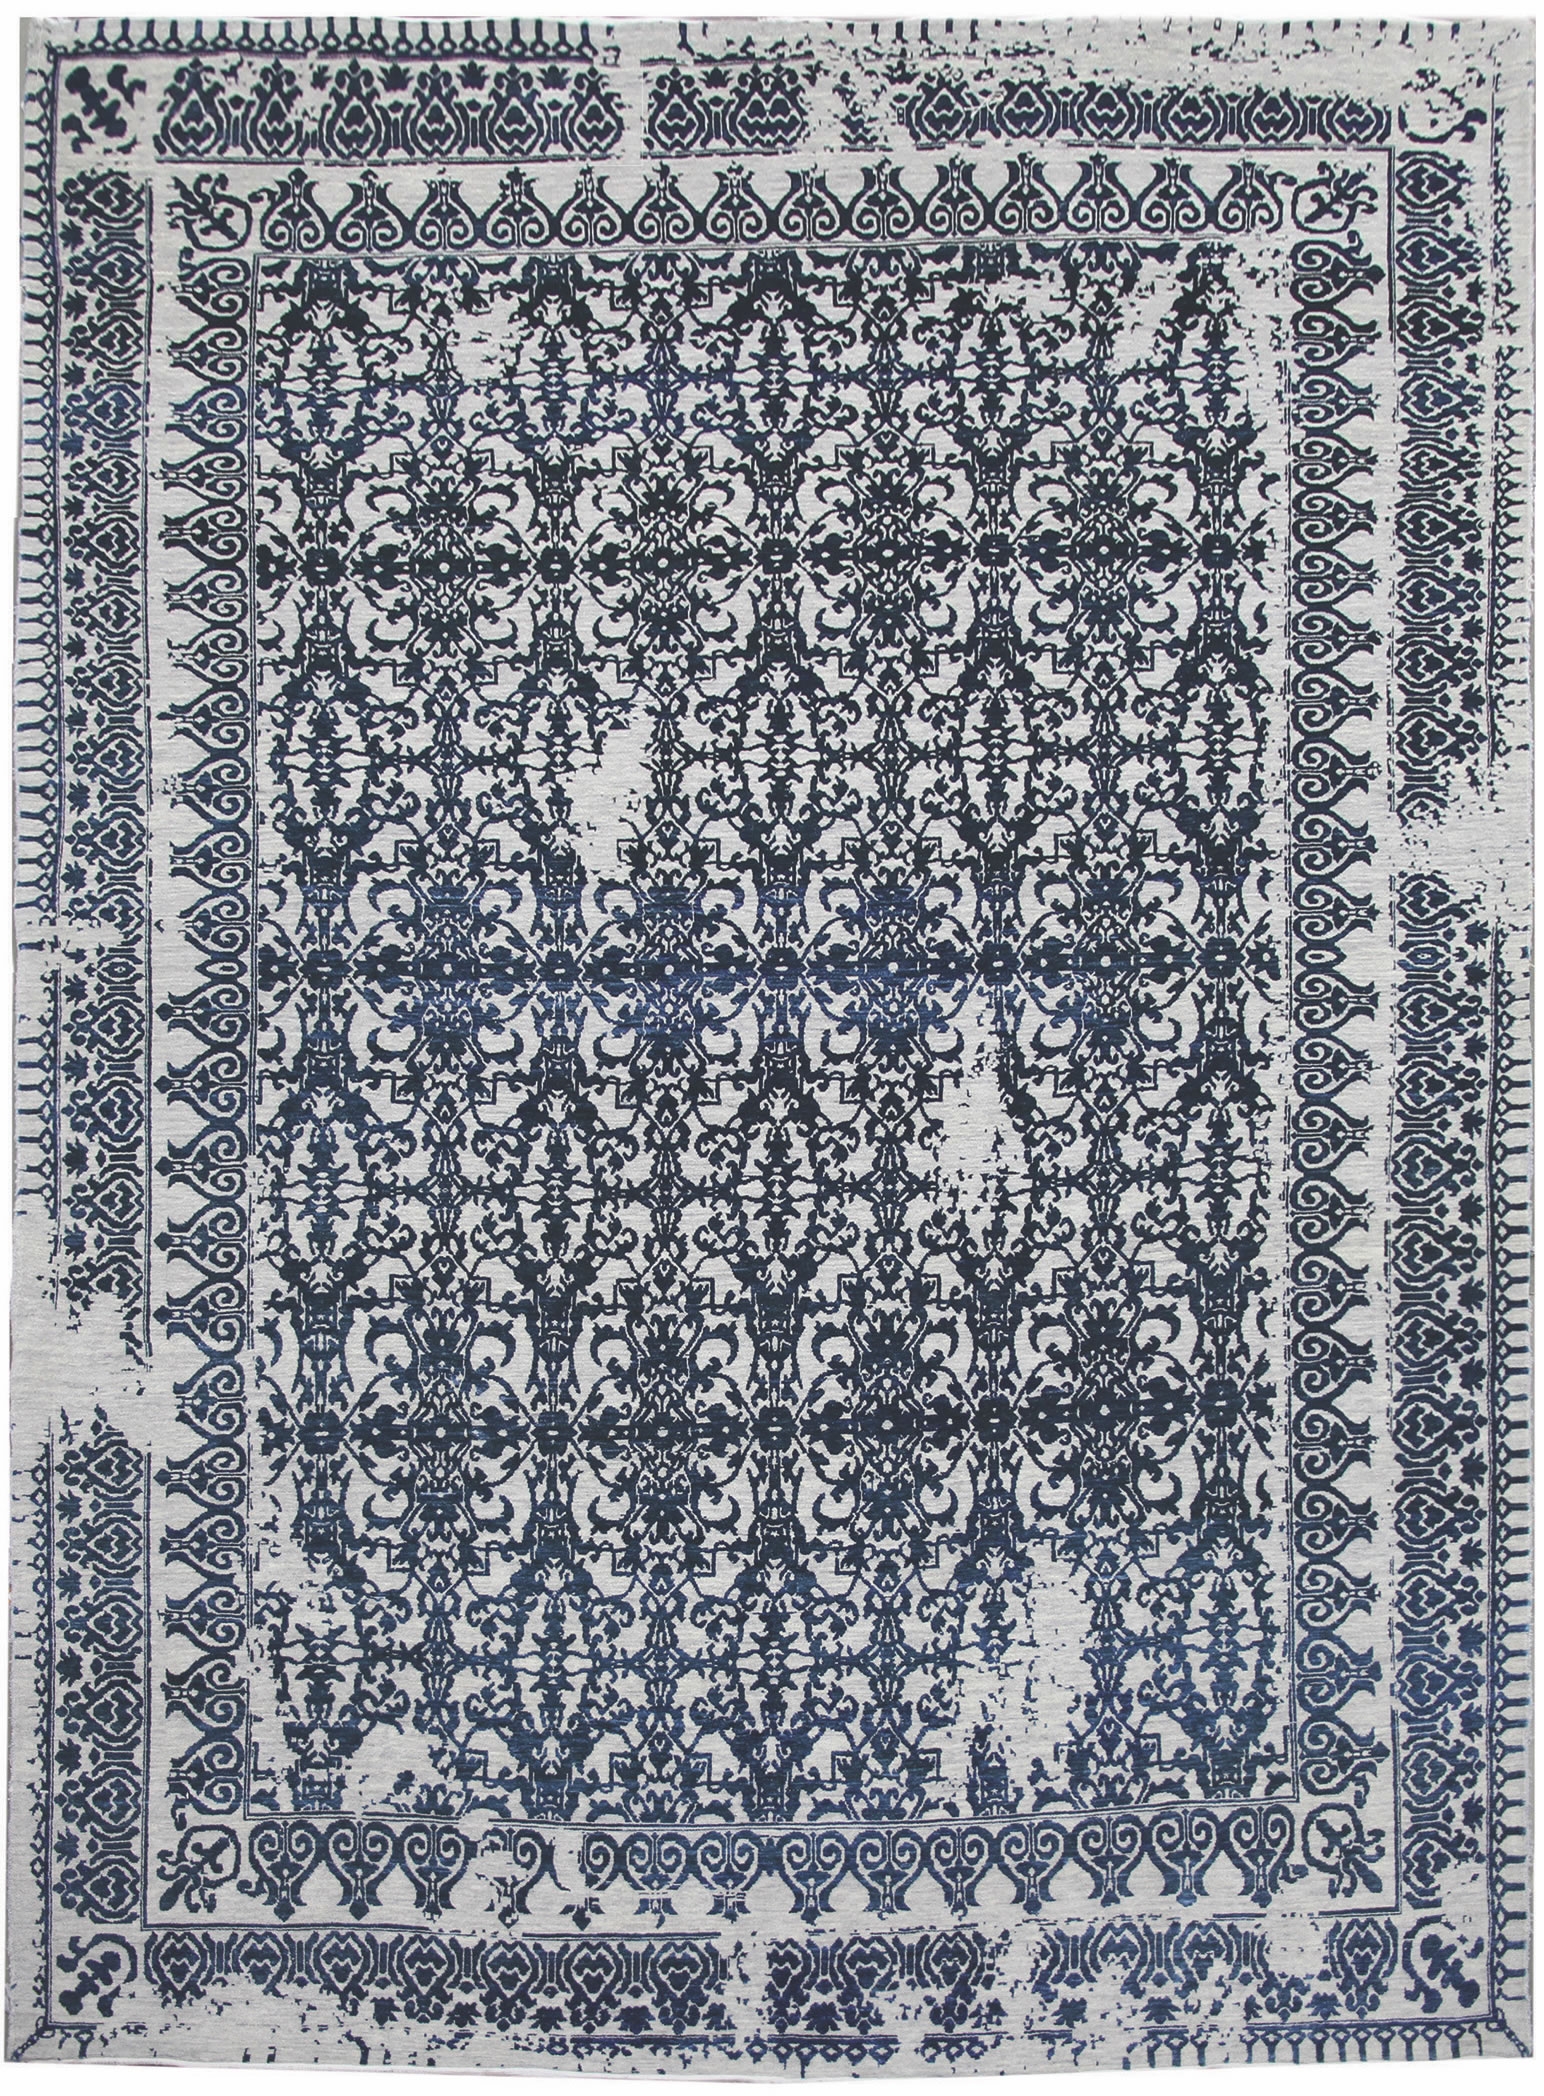 Ručne viazaný kusový koberec Diamond DC-JK 7 Silver / denim - 305x425 cm Diamond Carpets koberce 